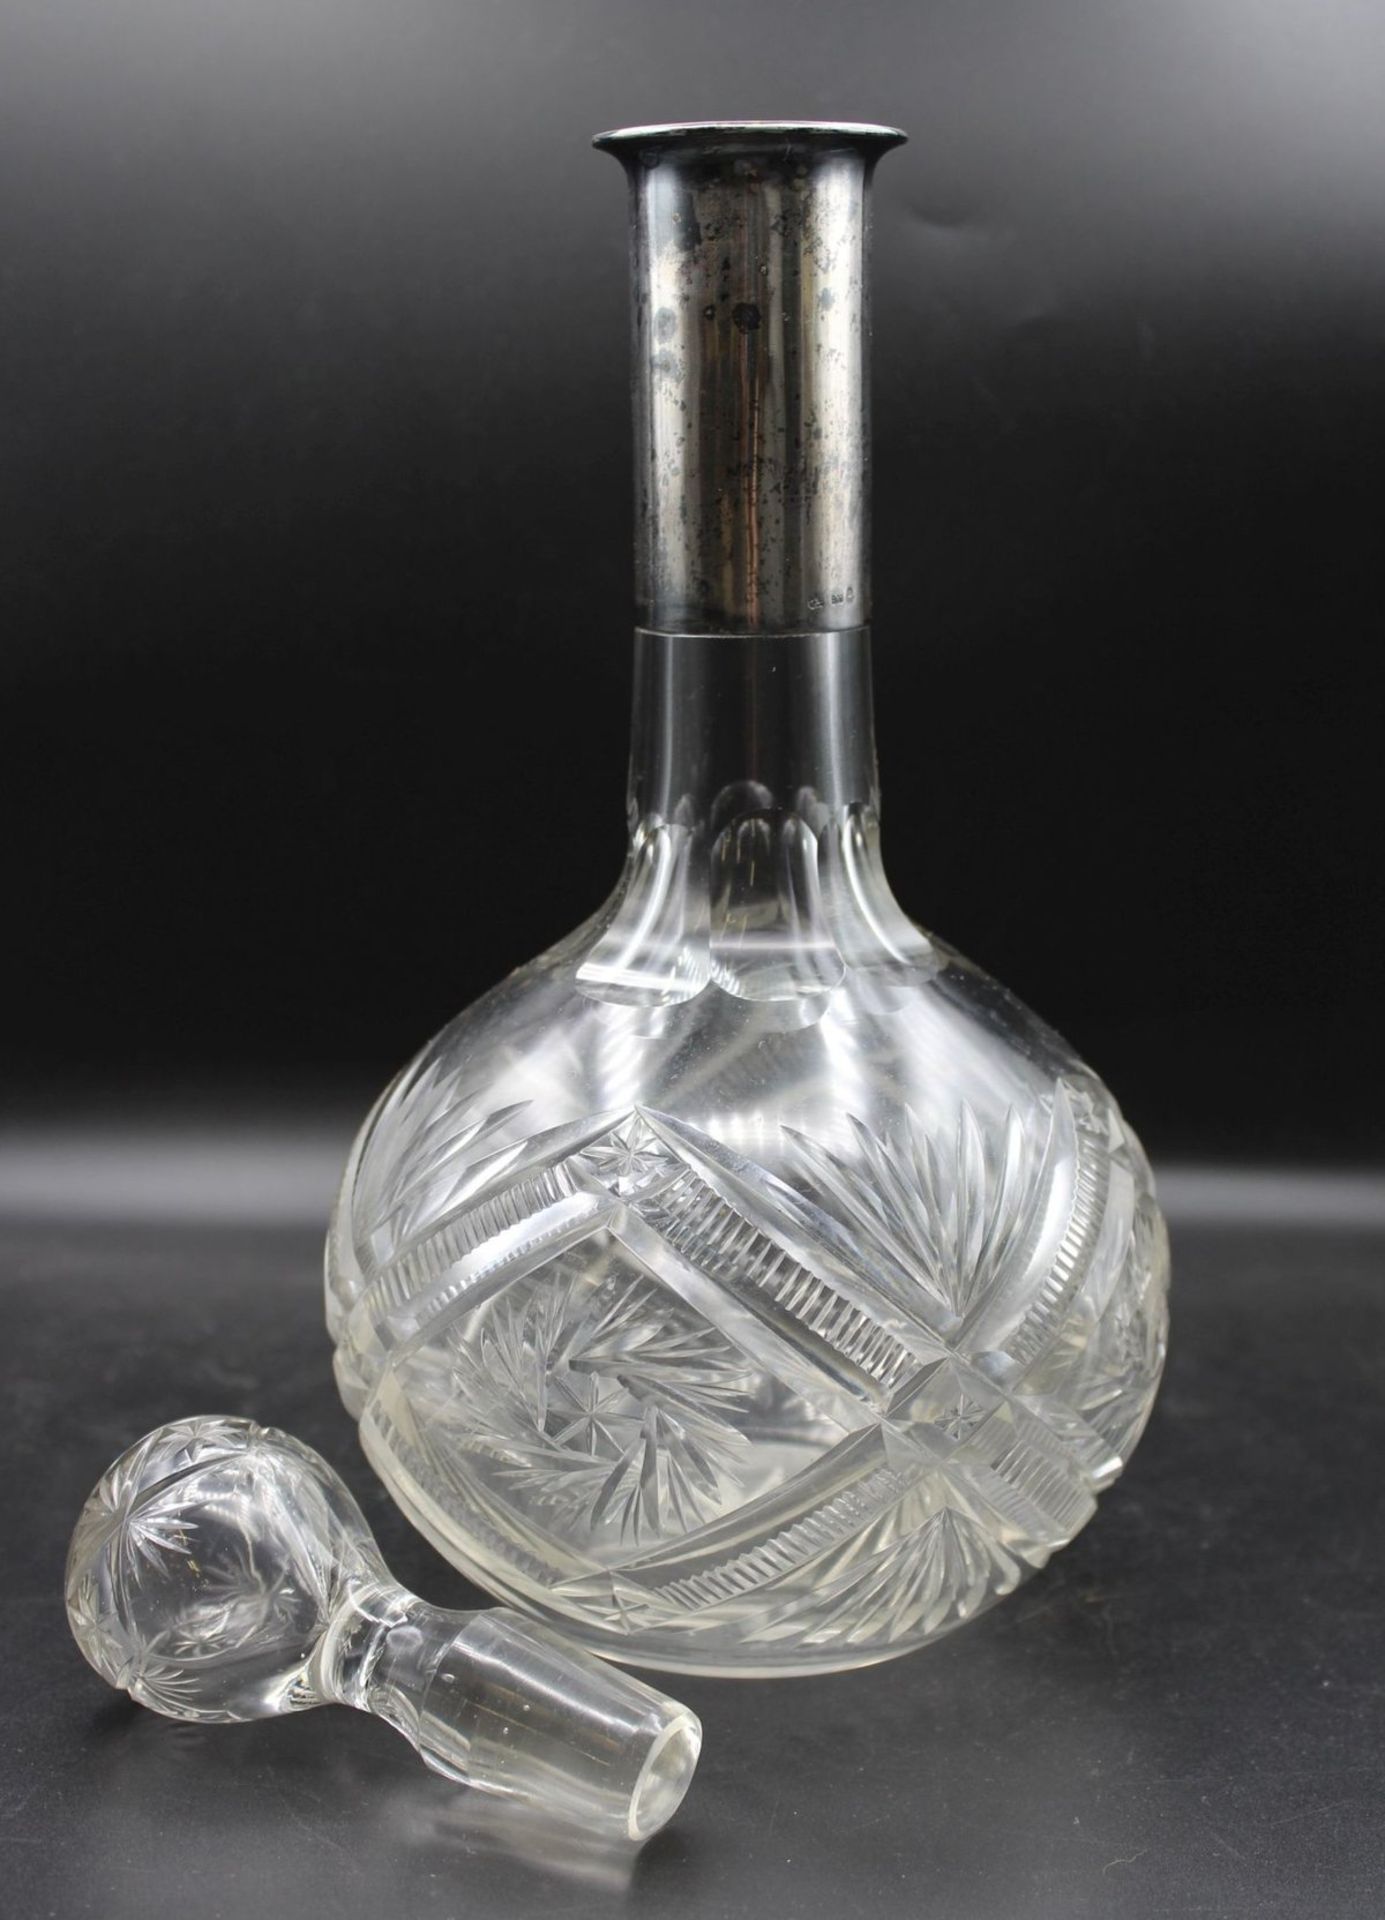 bauchige Karaffe, um 1900, Kristall beschliffen, Silbermontur -800-, H-30cm. - Bild 2 aus 3